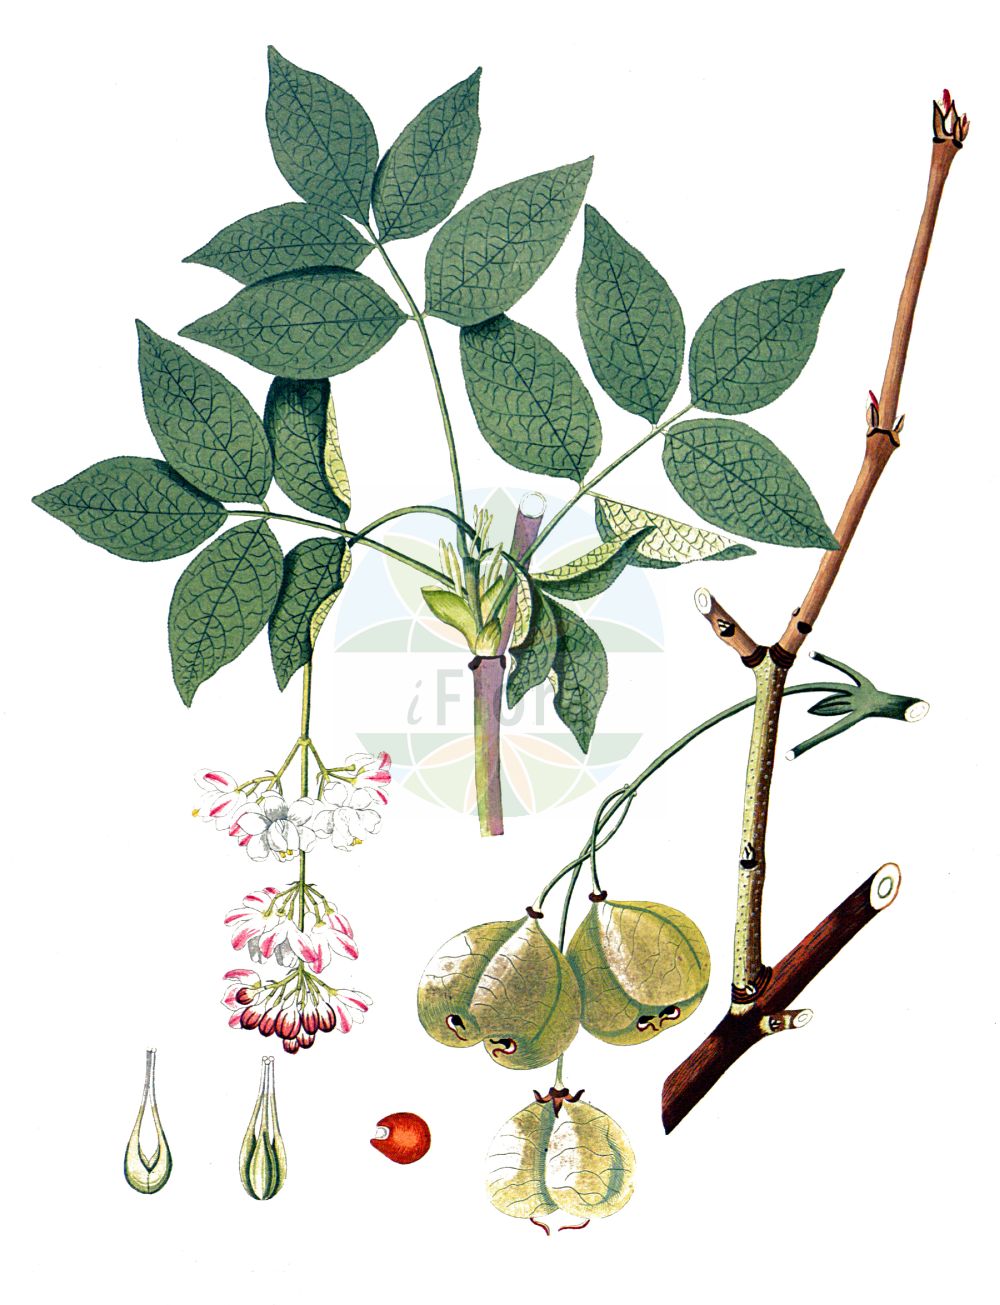 Historische Abbildung von Staphylea pinnata (Gewöhnliche Pimpernuß - Bladdernut). Das Bild zeigt Blatt, Bluete, Frucht und Same. ---- Historical Drawing of Staphylea pinnata (Gewöhnliche Pimpernuß - Bladdernut). The image is showing leaf, flower, fruit and seed.(Staphylea pinnata,Gewöhnliche Pimpernuß,Bladdernut,Staphylea pinnata,Gewoehnliche Pimpernuss,Paternosterbaum,Pimpernuss,Bladdernut,European Bladdernut,Staphylea,Pimpernuß,Bladdernut,Staphyleaceae,Pimpernussgewächse,Bladdernut family,Blatt,Bluete,Frucht,Same,leaf,flower,fruit,seed,Krauss (1802f))